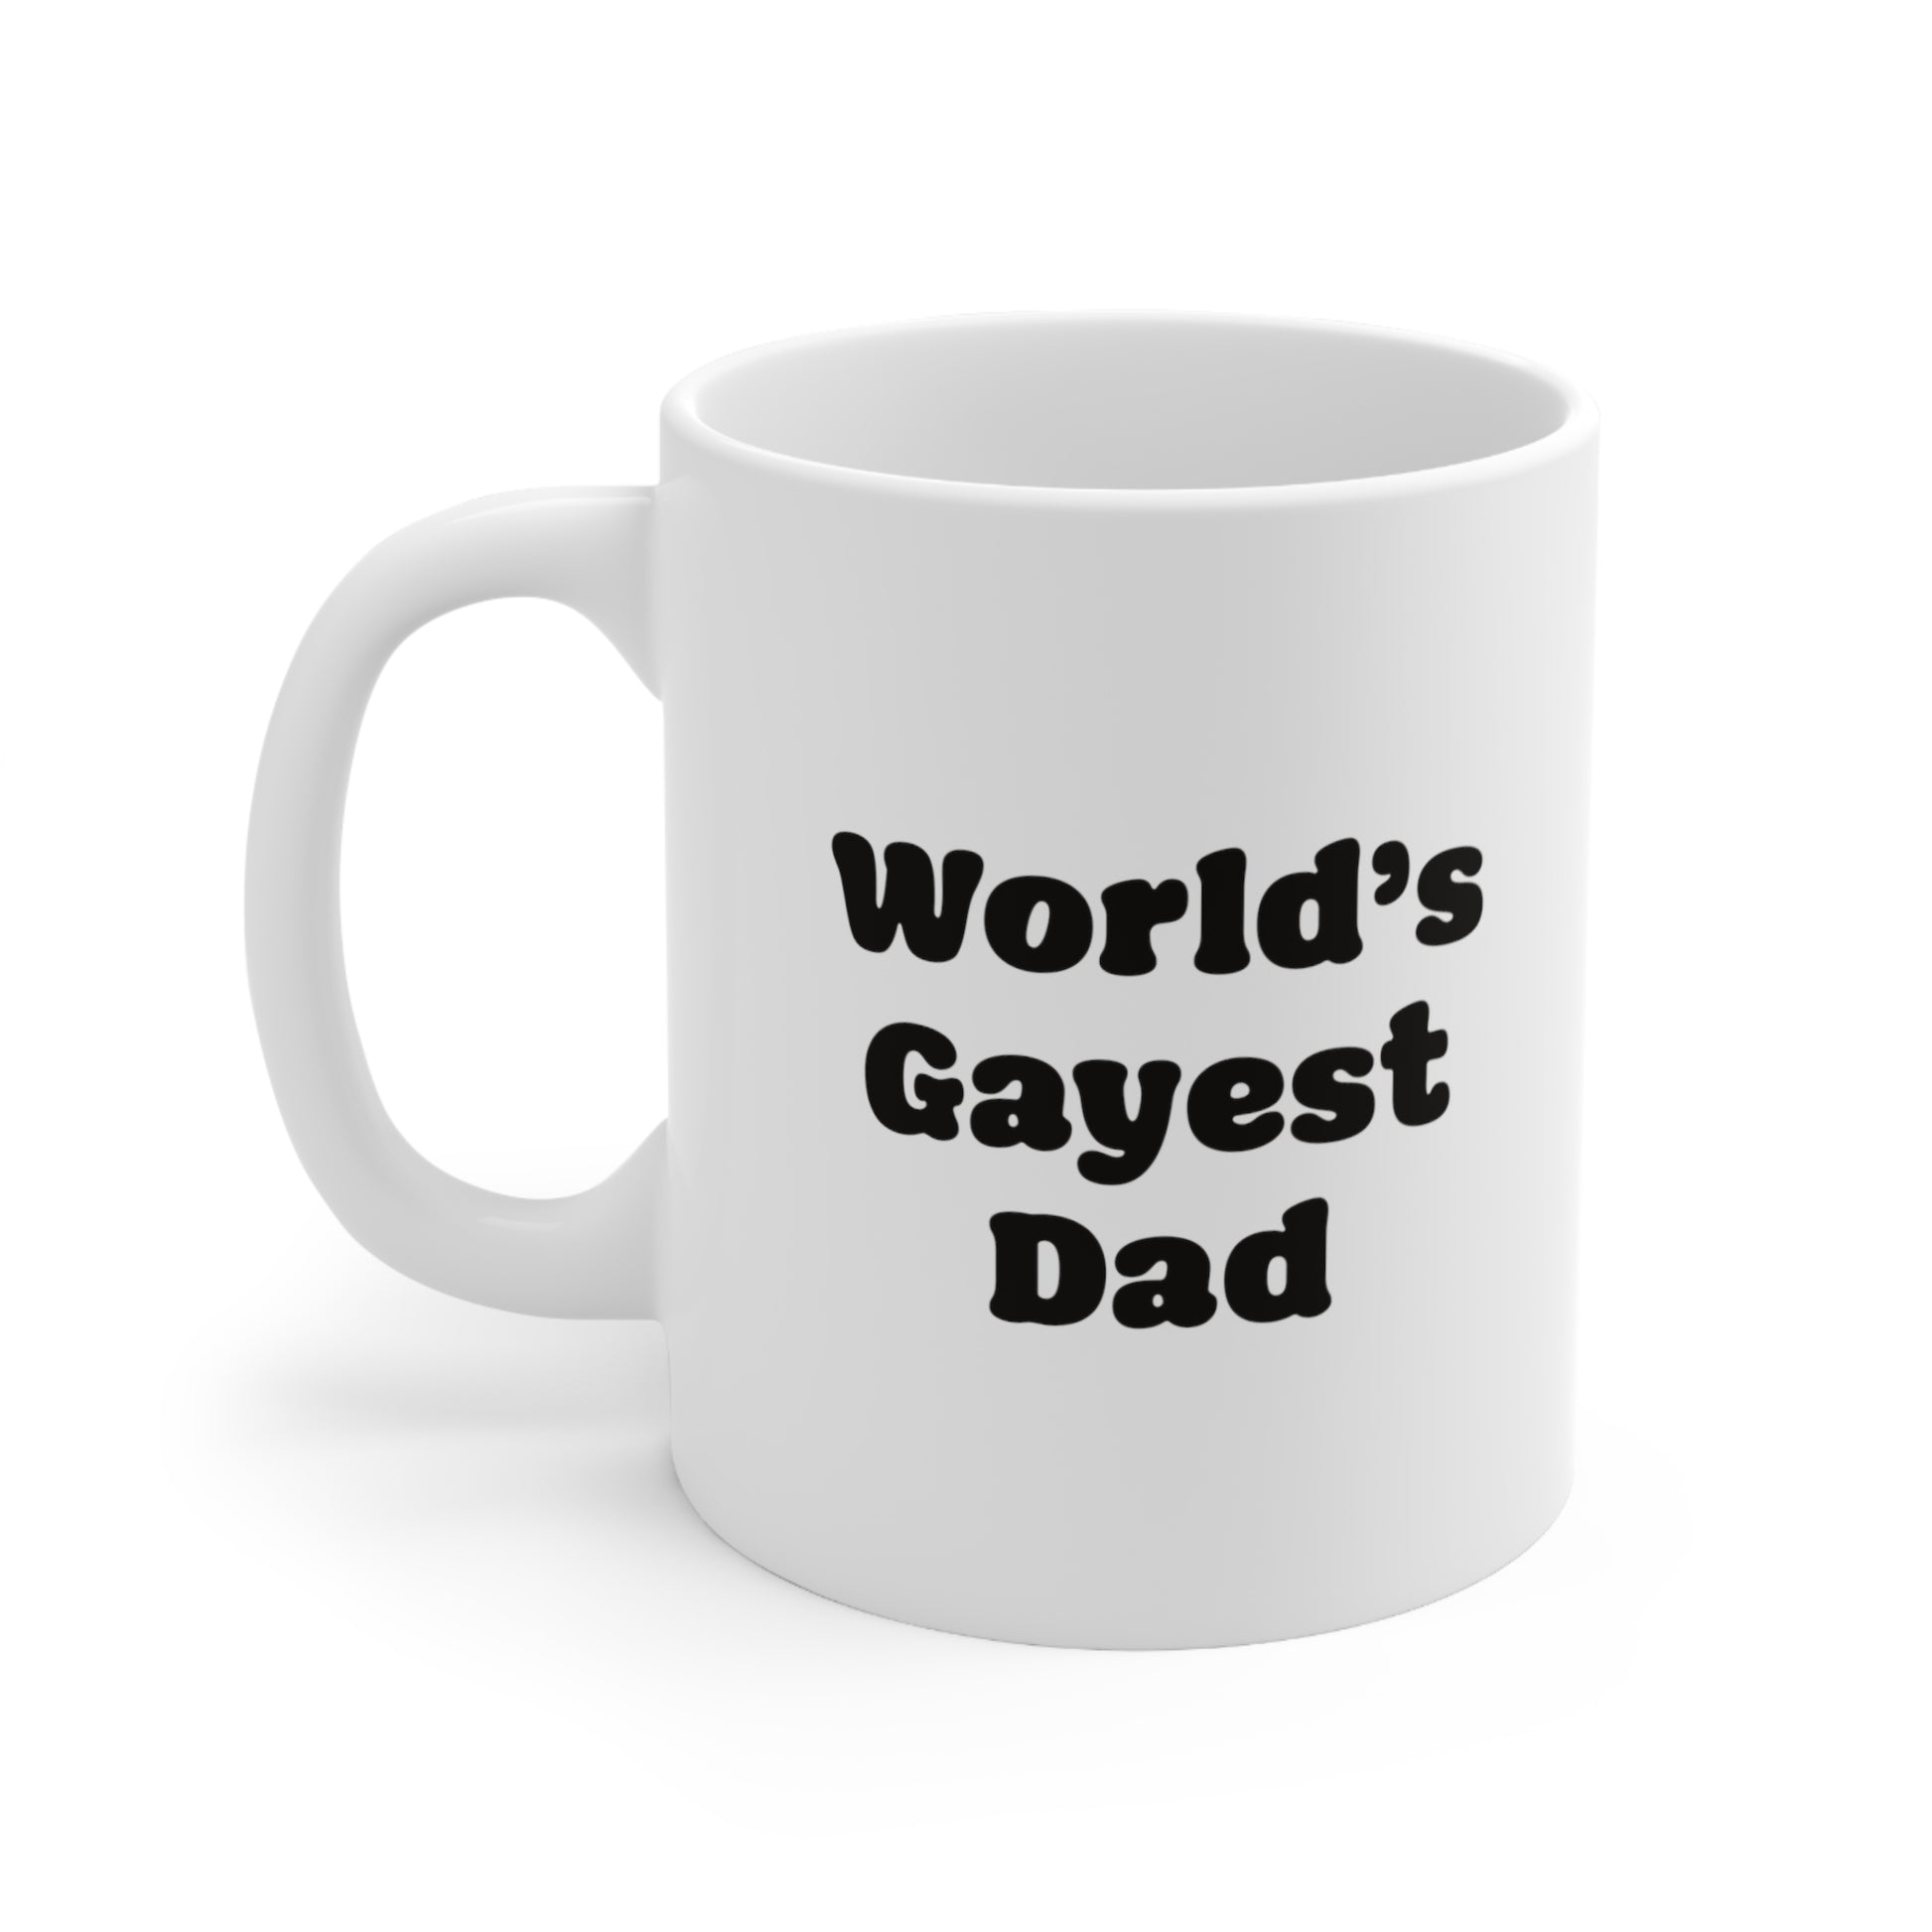 World's Gayest Dad Coffee Mug